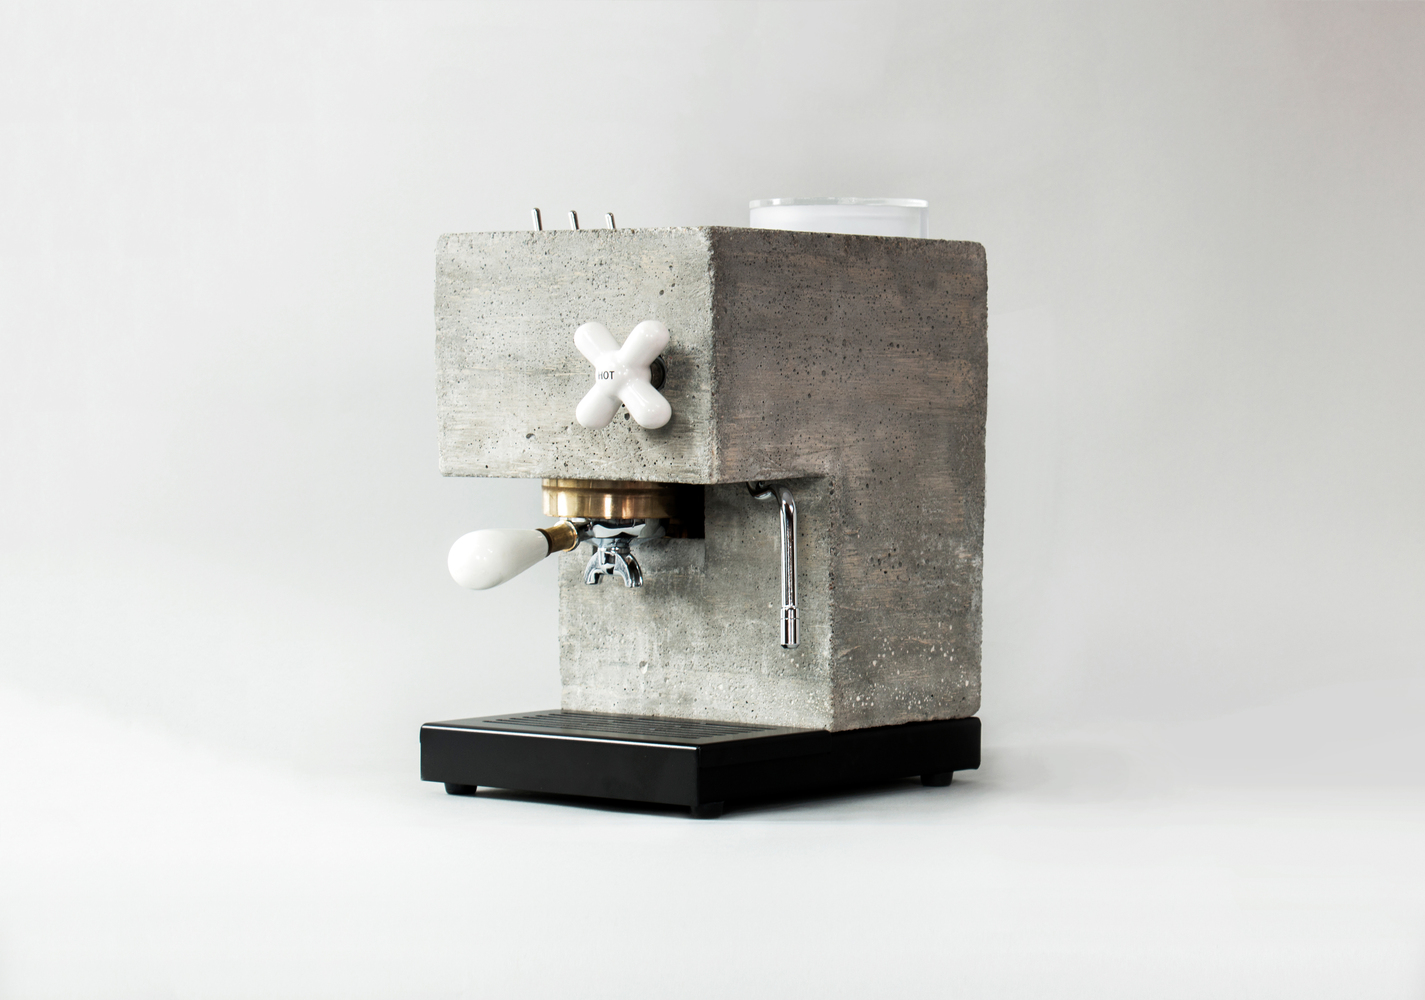 concrete coffee machine